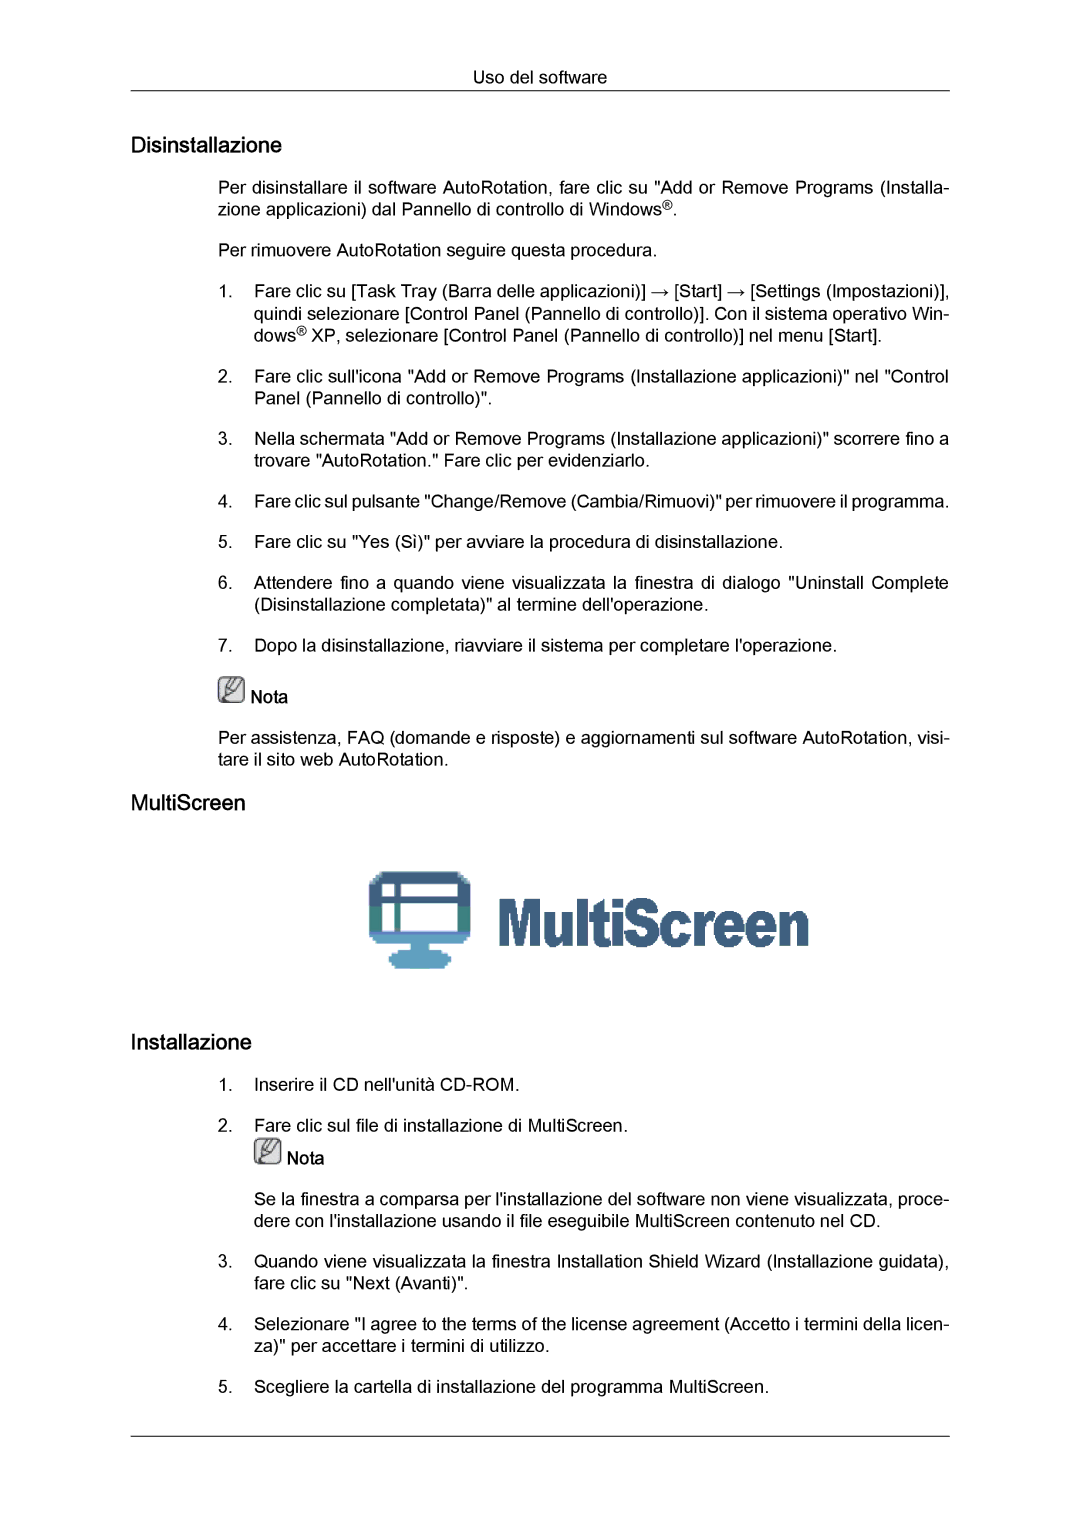 Samsung LS24KIVKBQ/EDC, LS24KIQRFV/EDC manual Disinstallazione, MultiScreen Installazione 